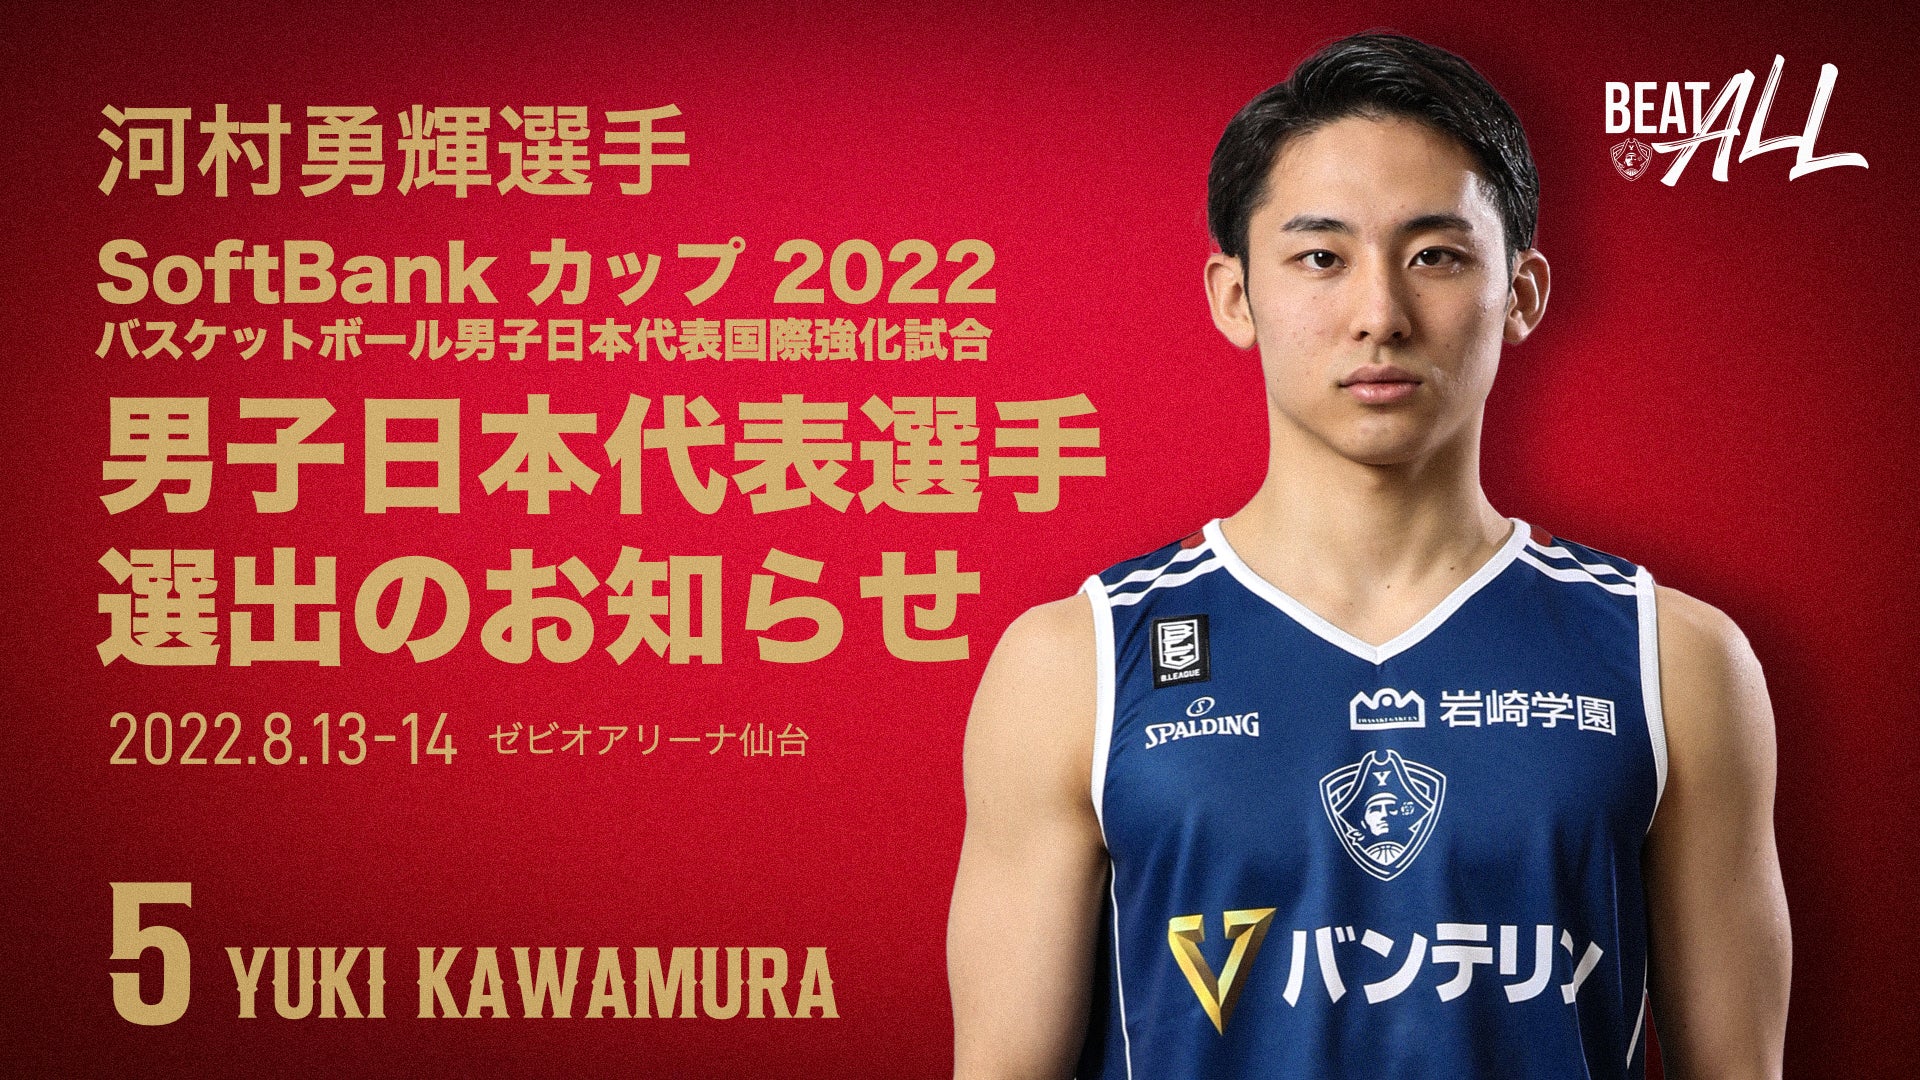 河村勇輝選手 「SoftBank カップ 2022」8/13(土)イラン戦 日本代表選手